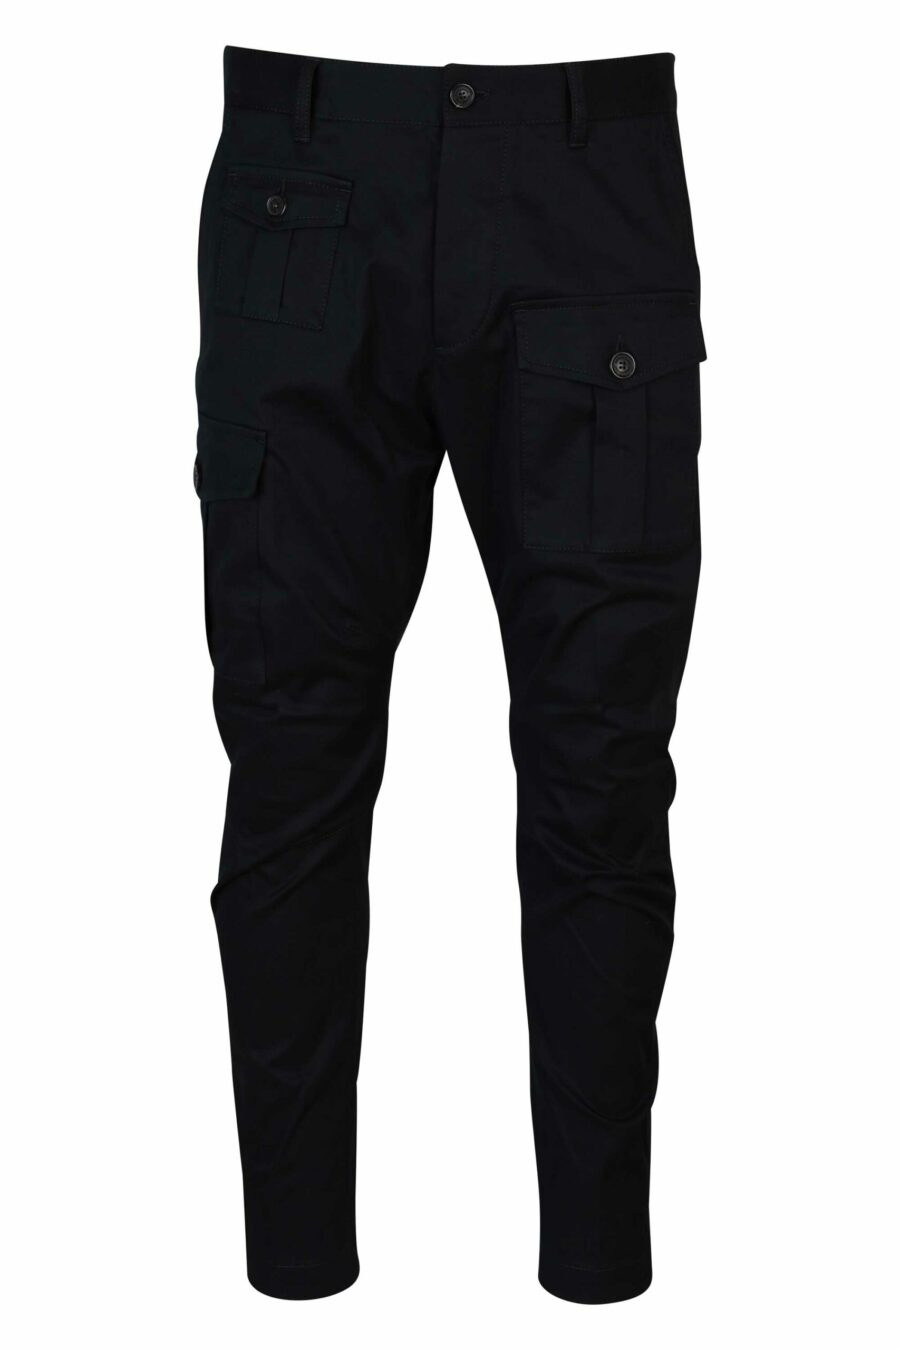 Pantalón negro estilo cargo "sexy cargo" - 8054148389000 scaled